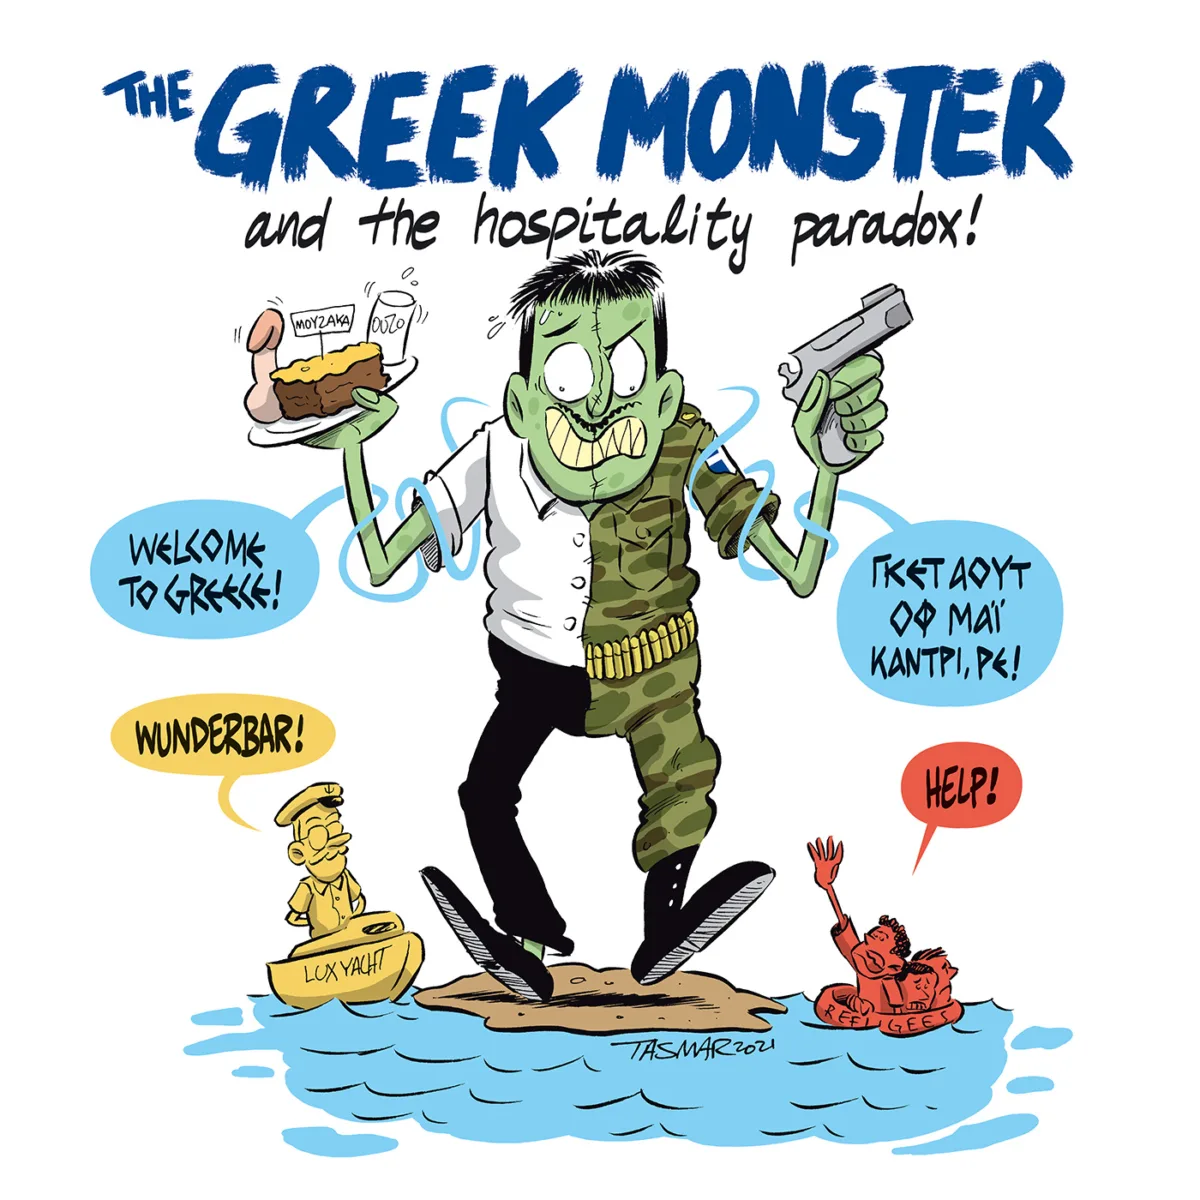 The Greek Monster!